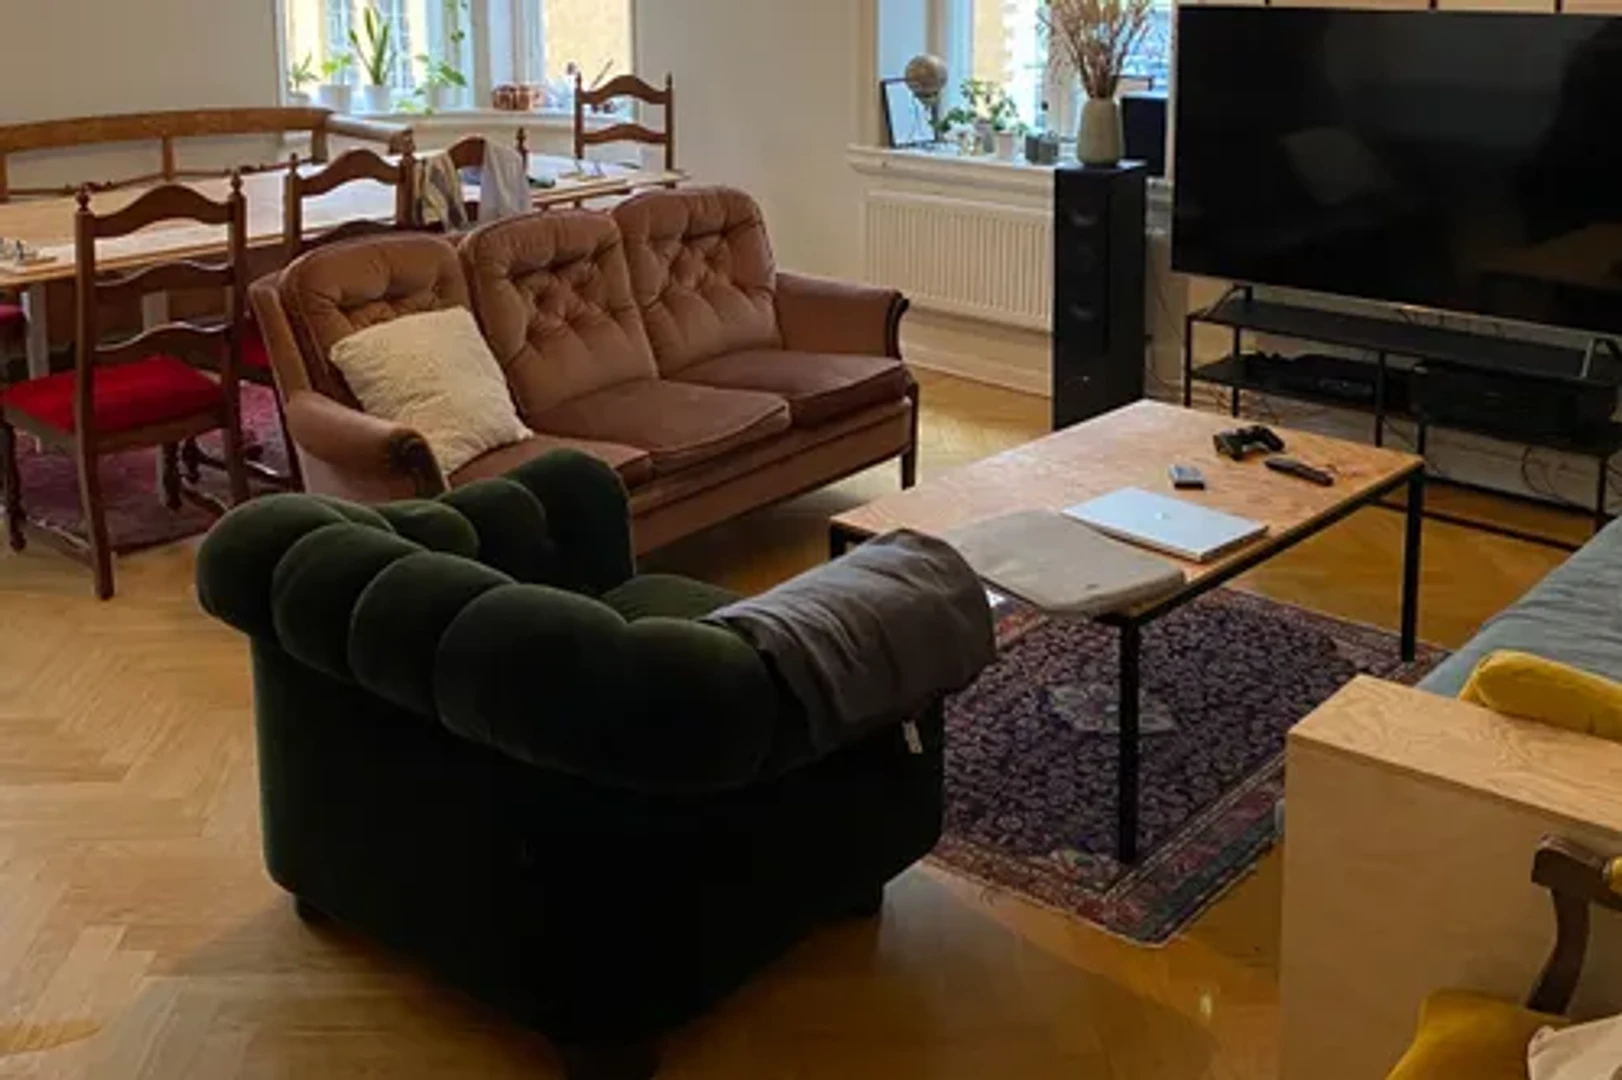 Zimmer mit Doppelbett zu vermieten Malmö